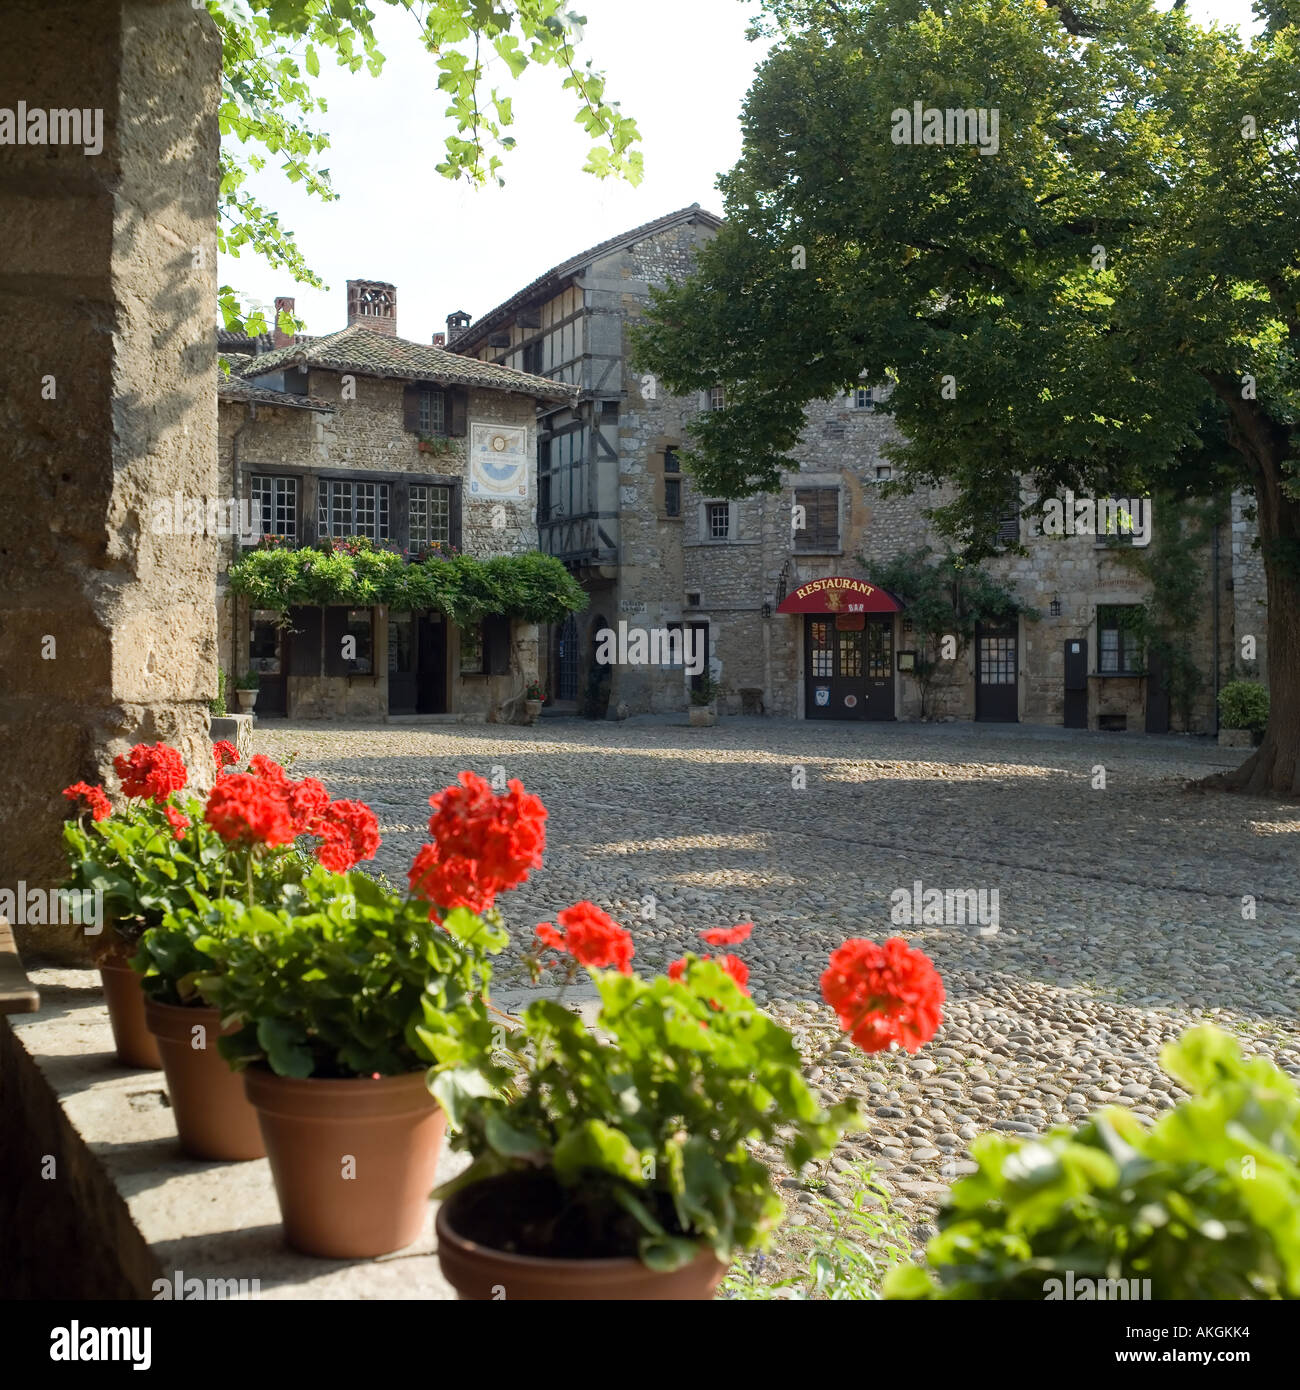 Place de la Halle square, place du Tilleul, red geranium flowers, Pérouges medieval walled city, Ain, Rhône valley, France Stock Photo